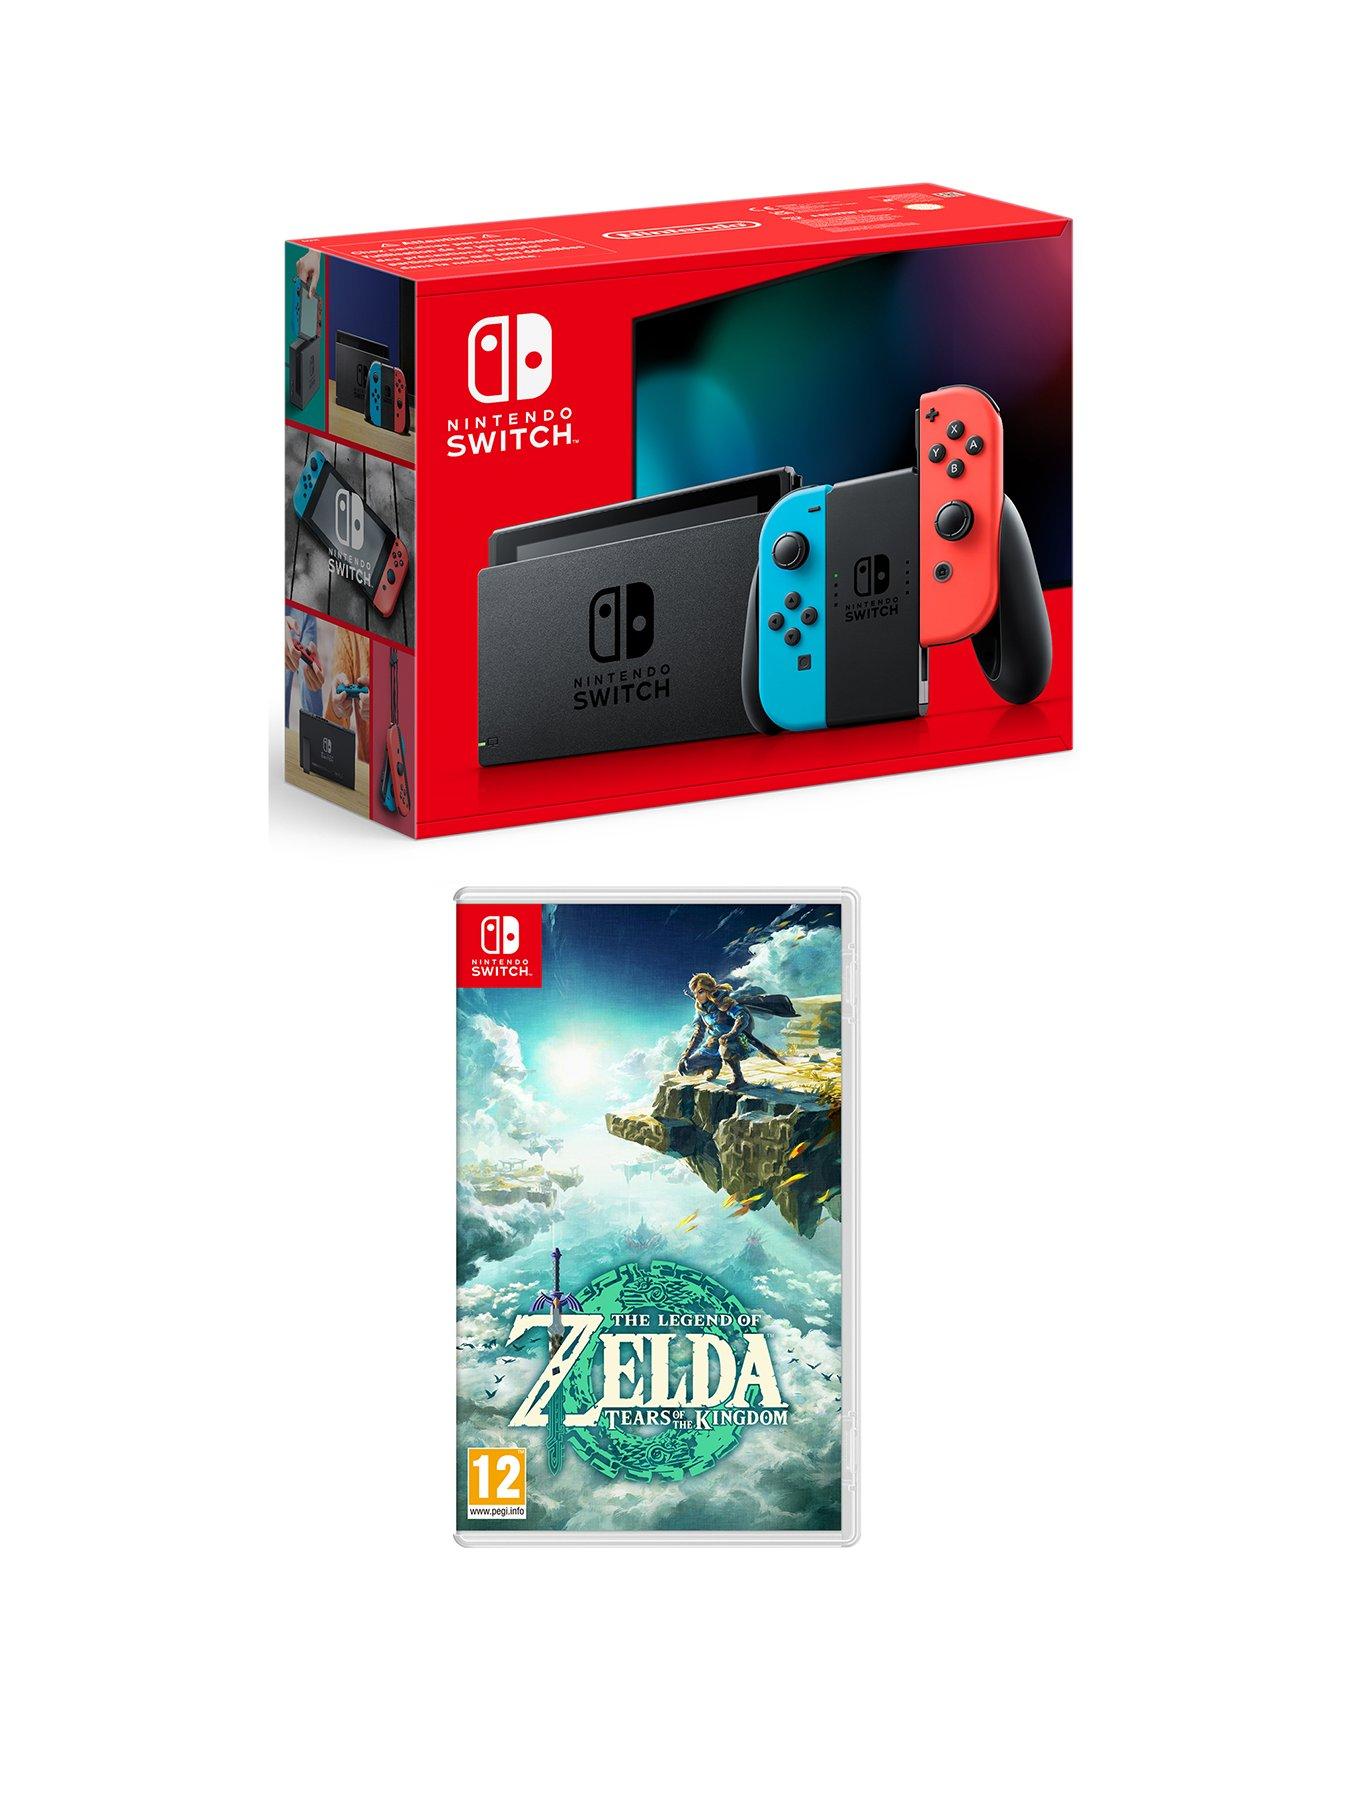 🛑 BLACK FRIDAY NINTENDO ESHOP DEALS 🛑 Huge Nintendo Switch Eshop Sale  Live NOW! Lowest Prices 2023! 